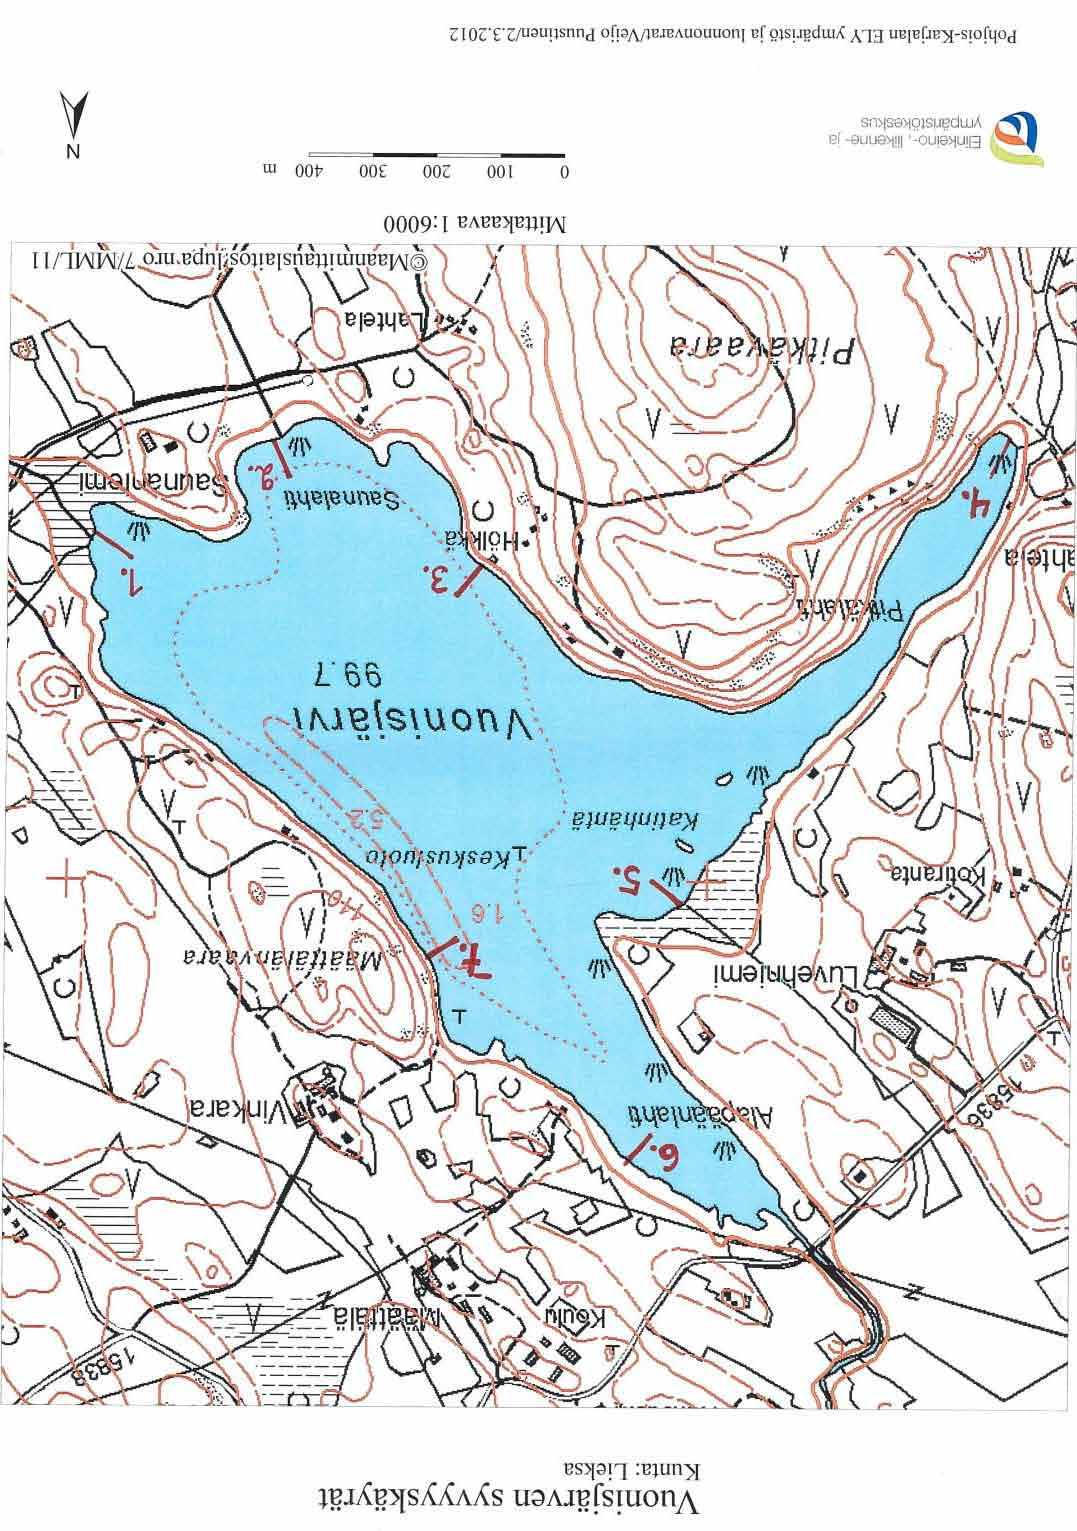 Määttälänvaaran kartoituslinja (7) oli noin kuuden metrin pituinen (taulukko, liite 4). Alueen ympäristössä on metsää, joka kasvaa jyrkähköllä rinteellä.